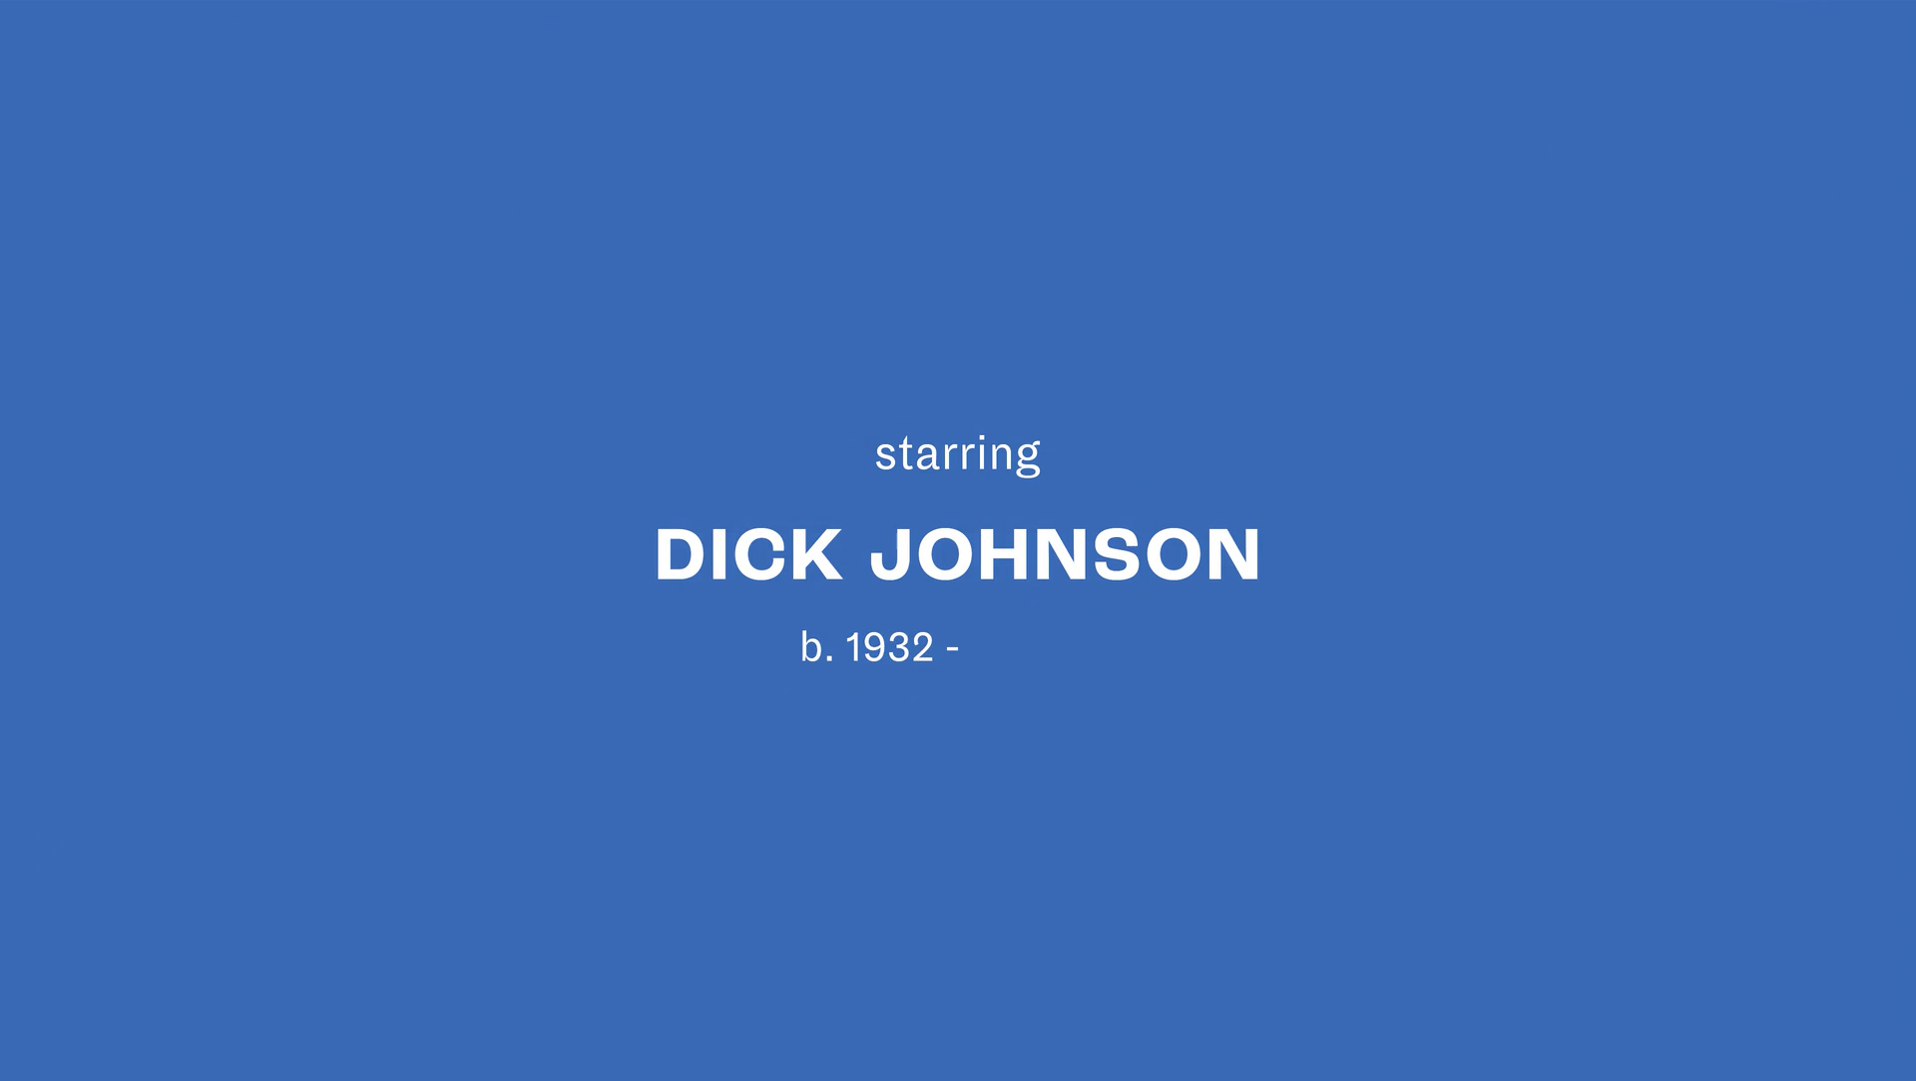 Cena final do documentário. Imagem azul em paisagem, com o escrito “starring/ Dick Johnson/b.1932 - “ no centro.